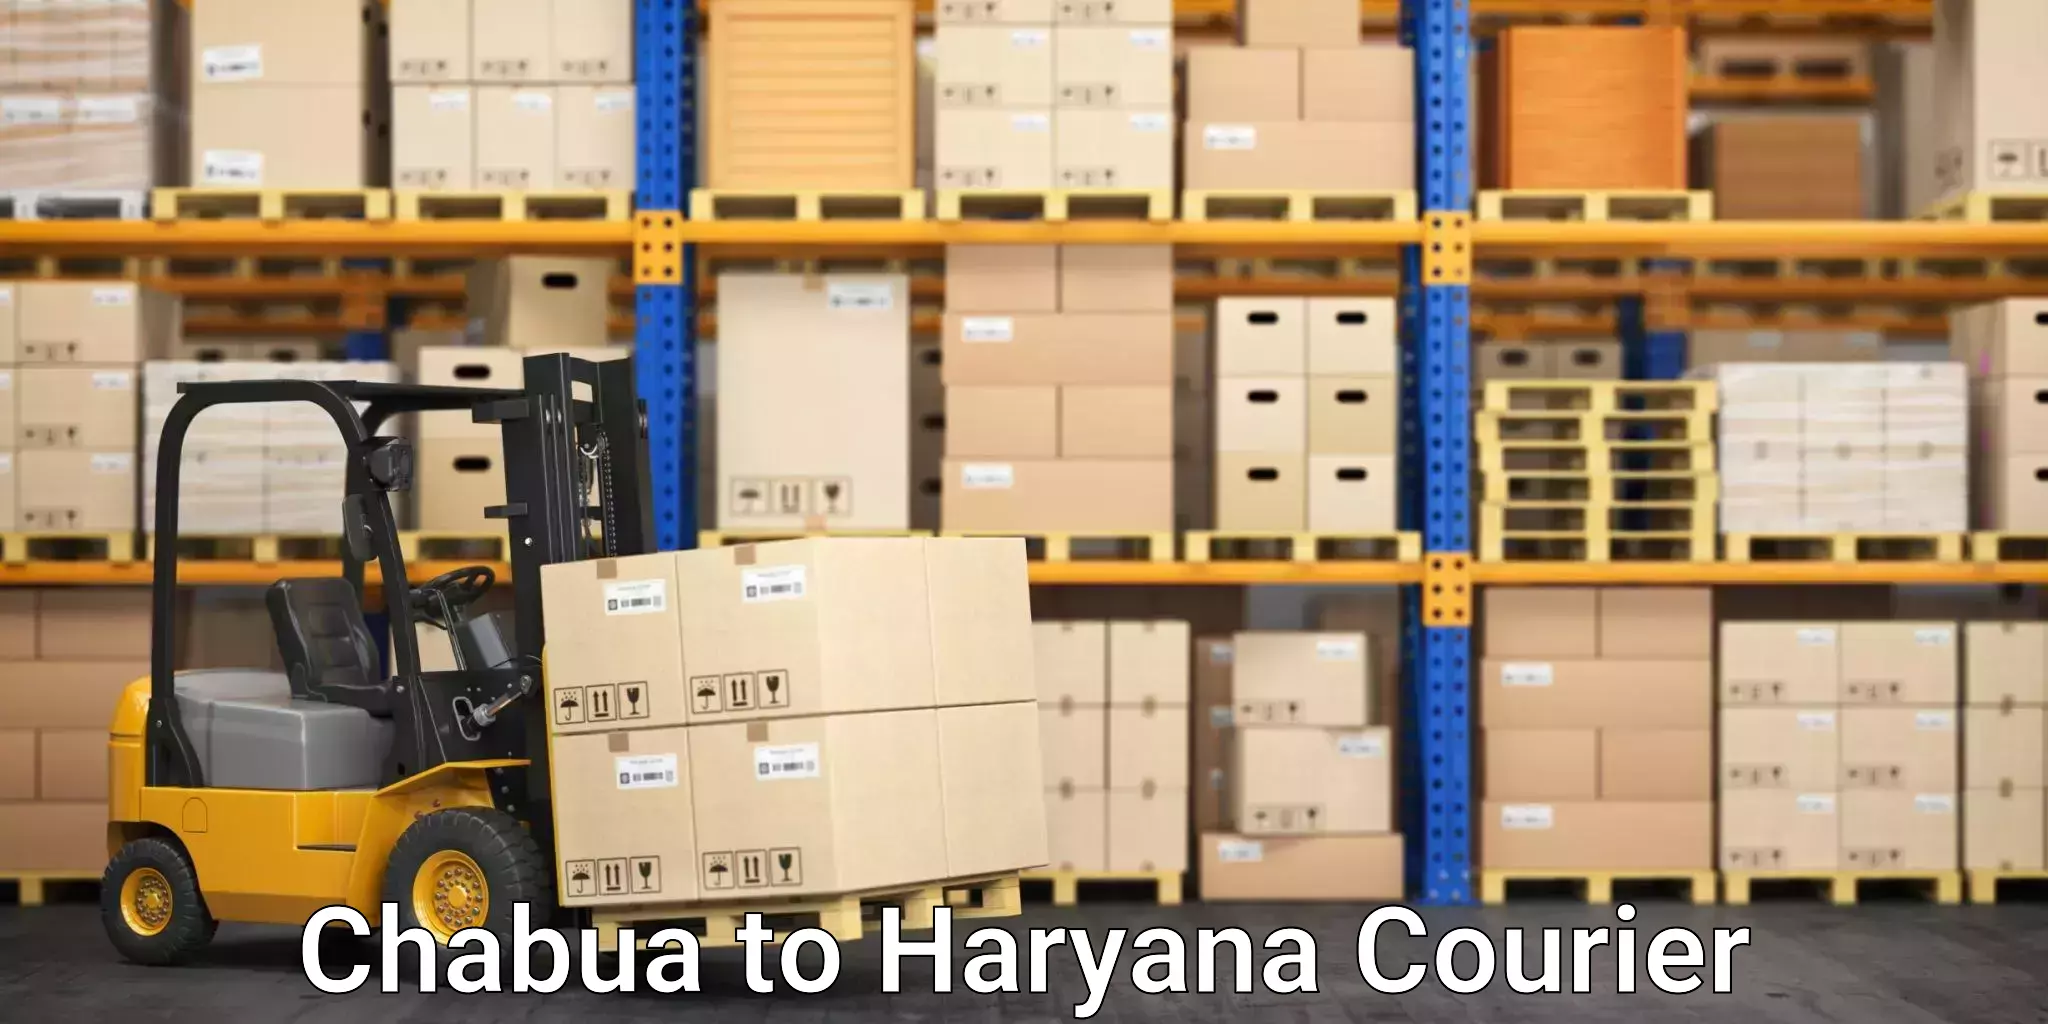 Customer-centric shipping Chabua to Hansi